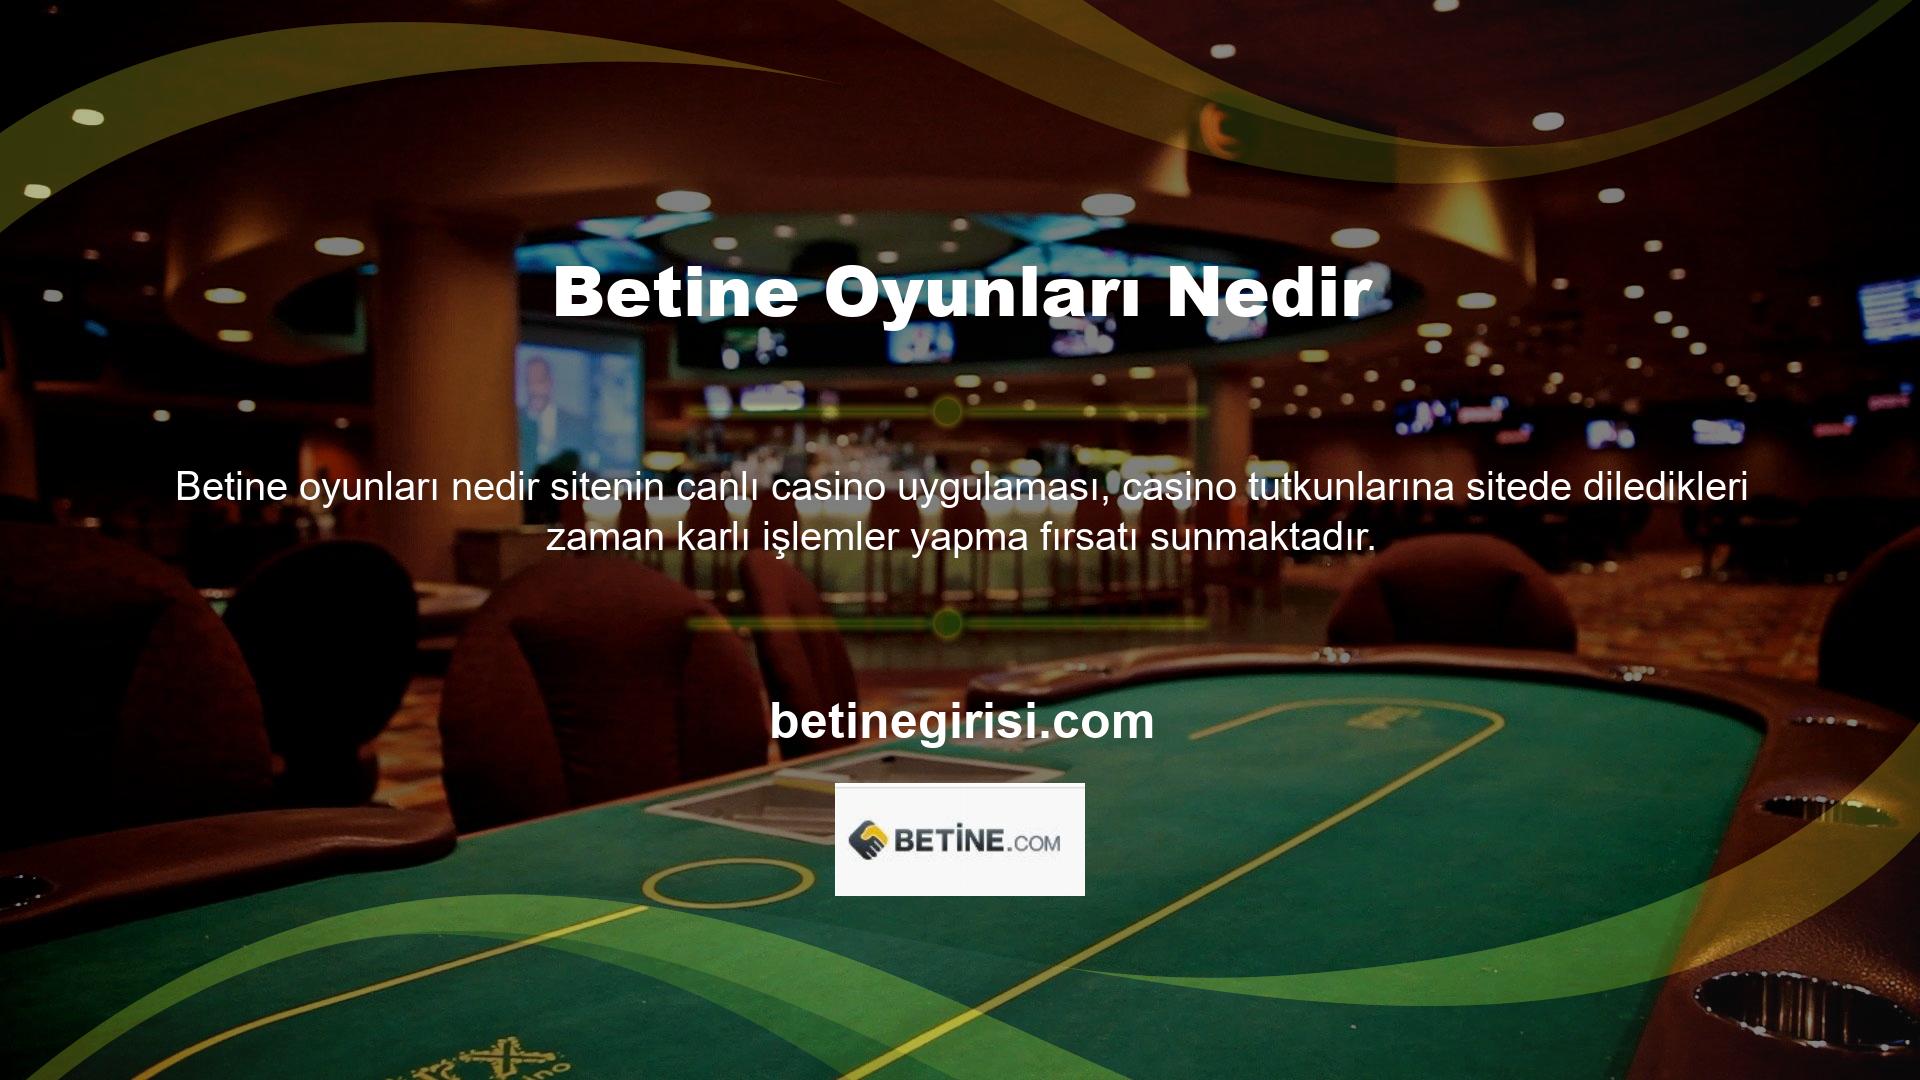 Betine, canlı casino uygulaması aracılığıyla sizlere gerçek bir casino heyecanını yaşama fırsatı sunan tek canlı bahis adresidir